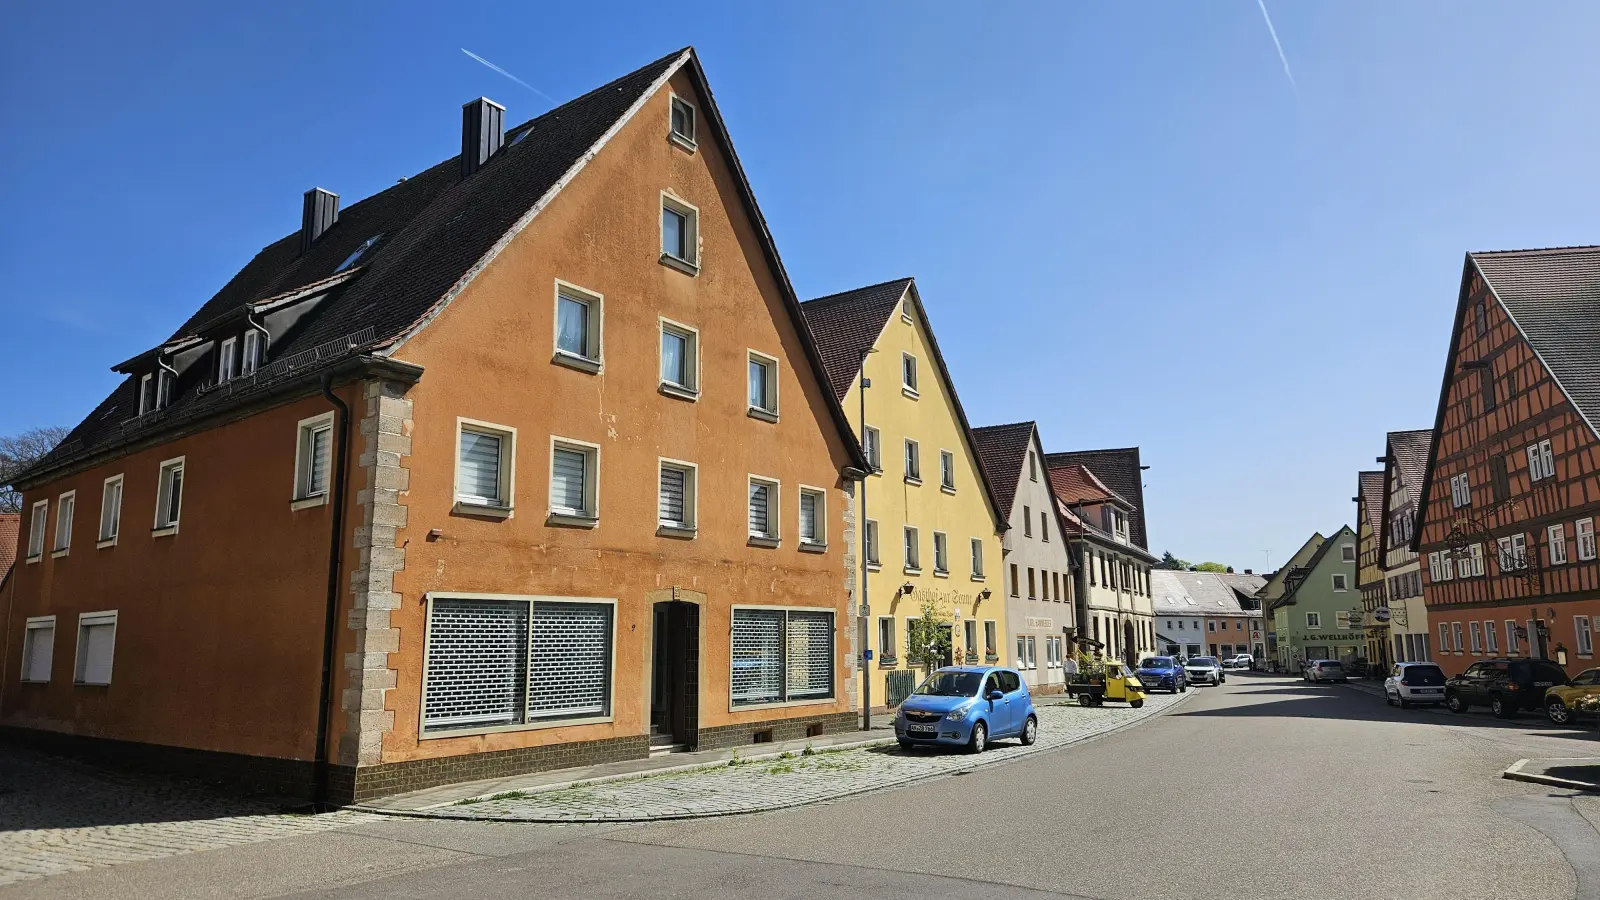 Neue Heimat in der Altstadt – zumindest vorübergehend: In dem Gebäude links im Bild sollen bis zu 20 Flüchtlinge eine Bleibe finden. Die Stadt Leutershausen hat das Haus Am Markt 9 gekauft. (Foto: Wolfgang Grebenhof)